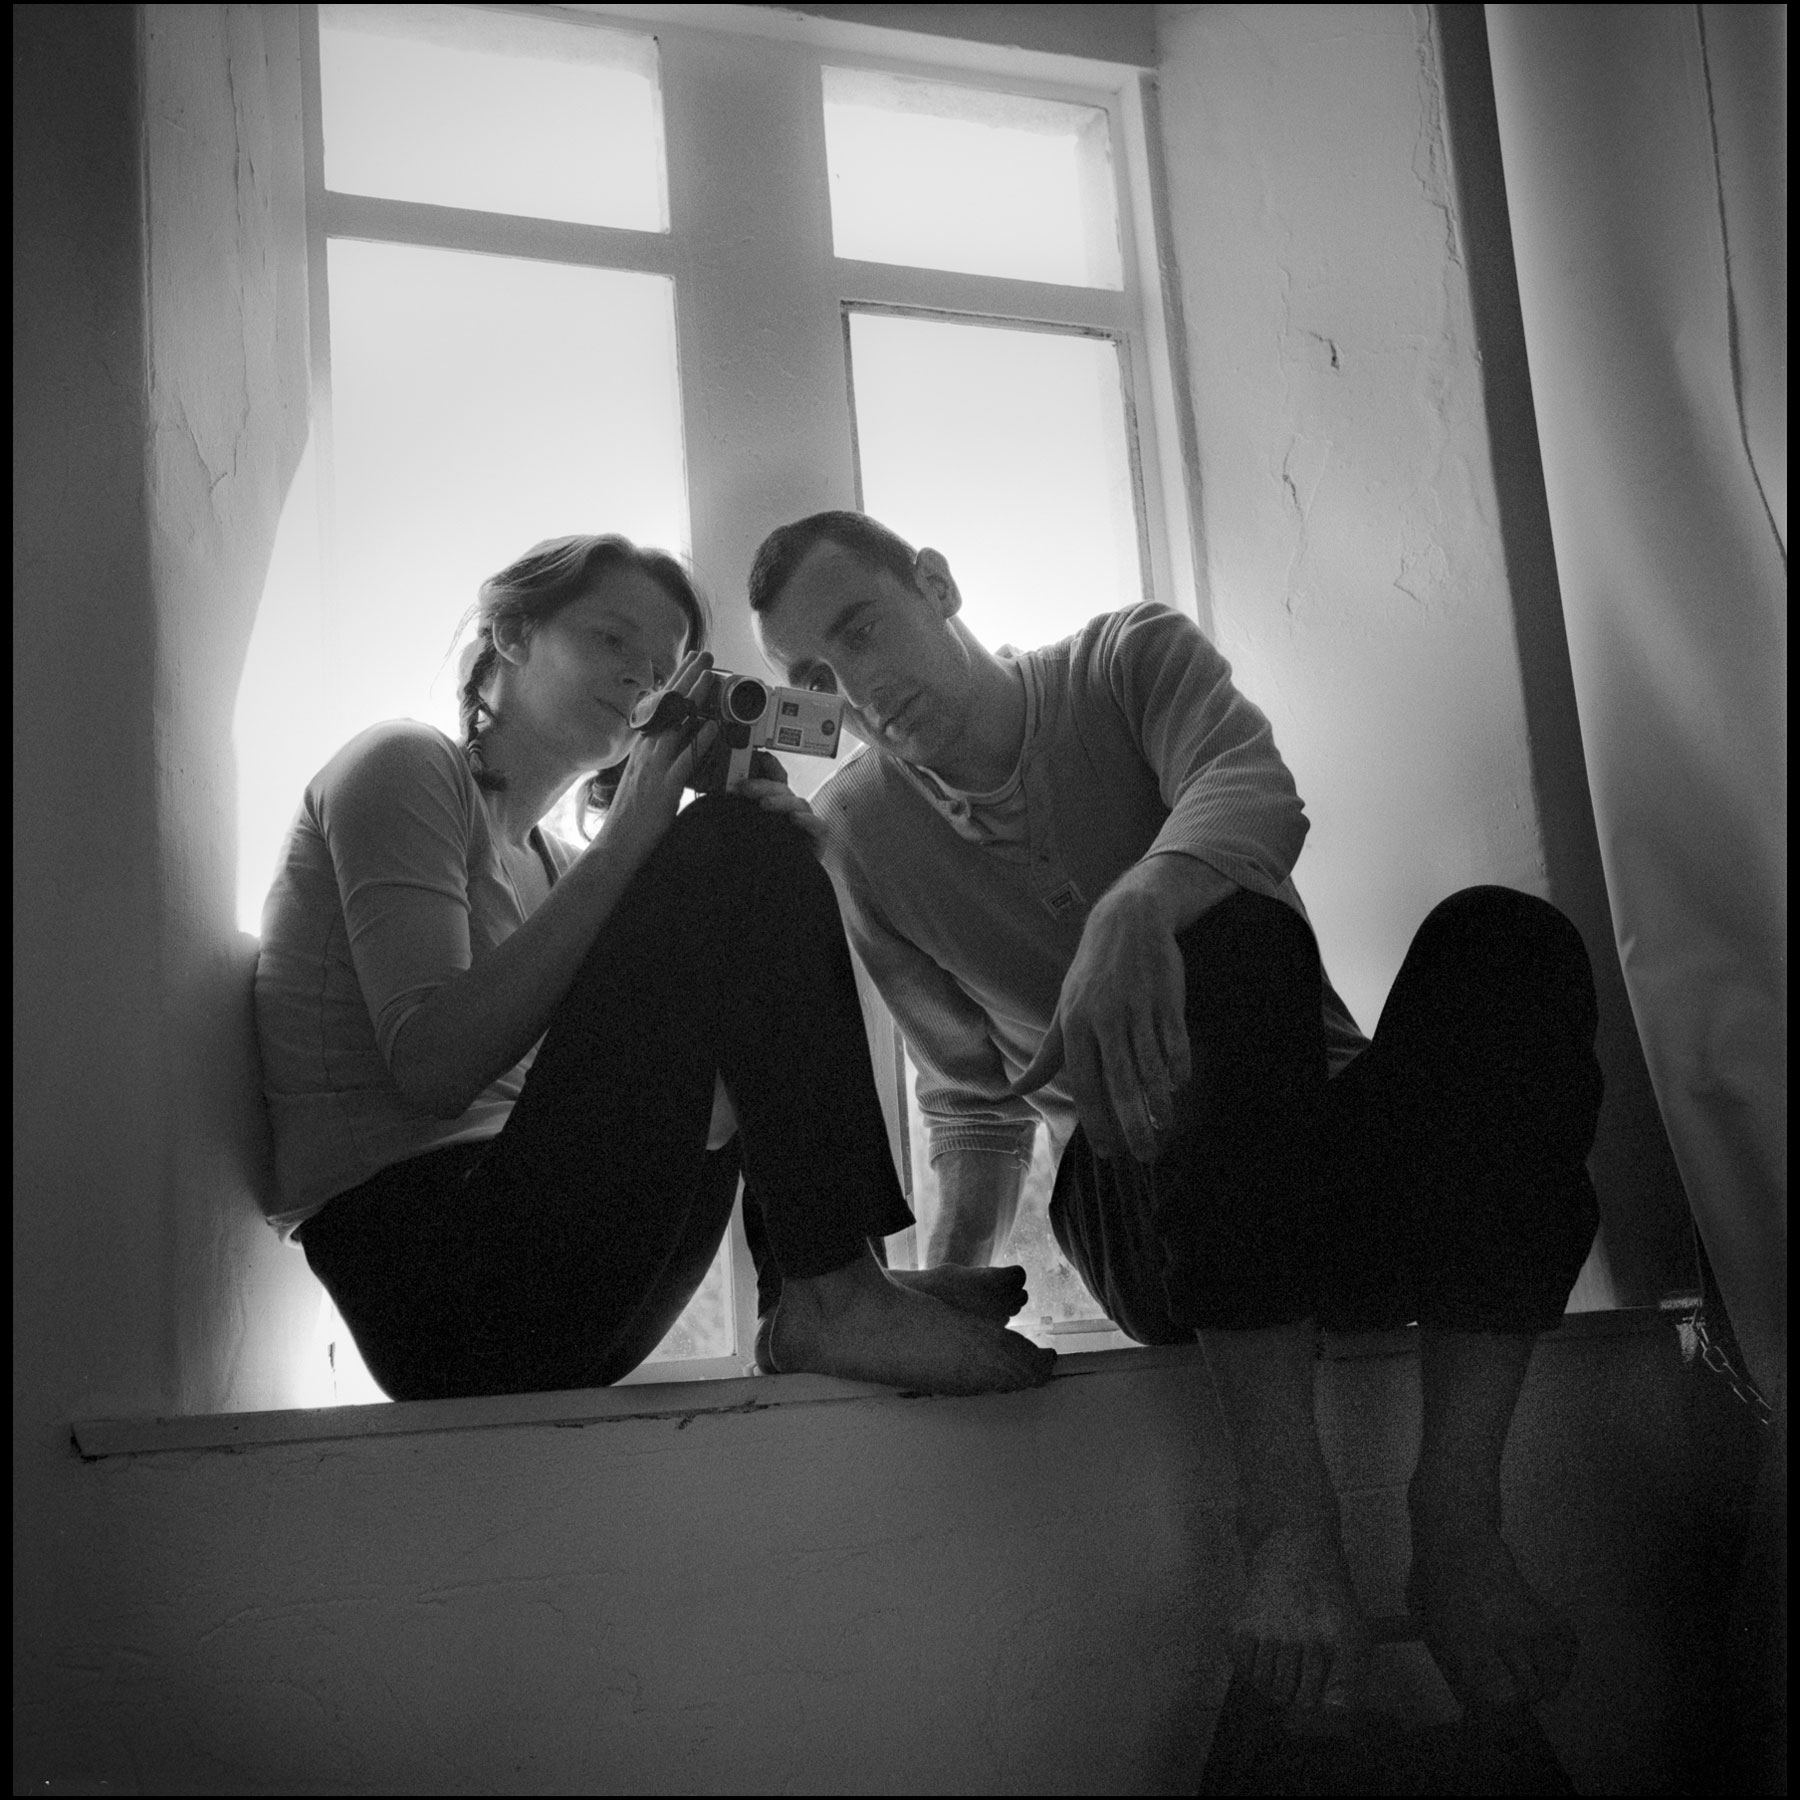 homme-femme-assis-sur-fenetre-regardent-camera-video-noir-et-blanc